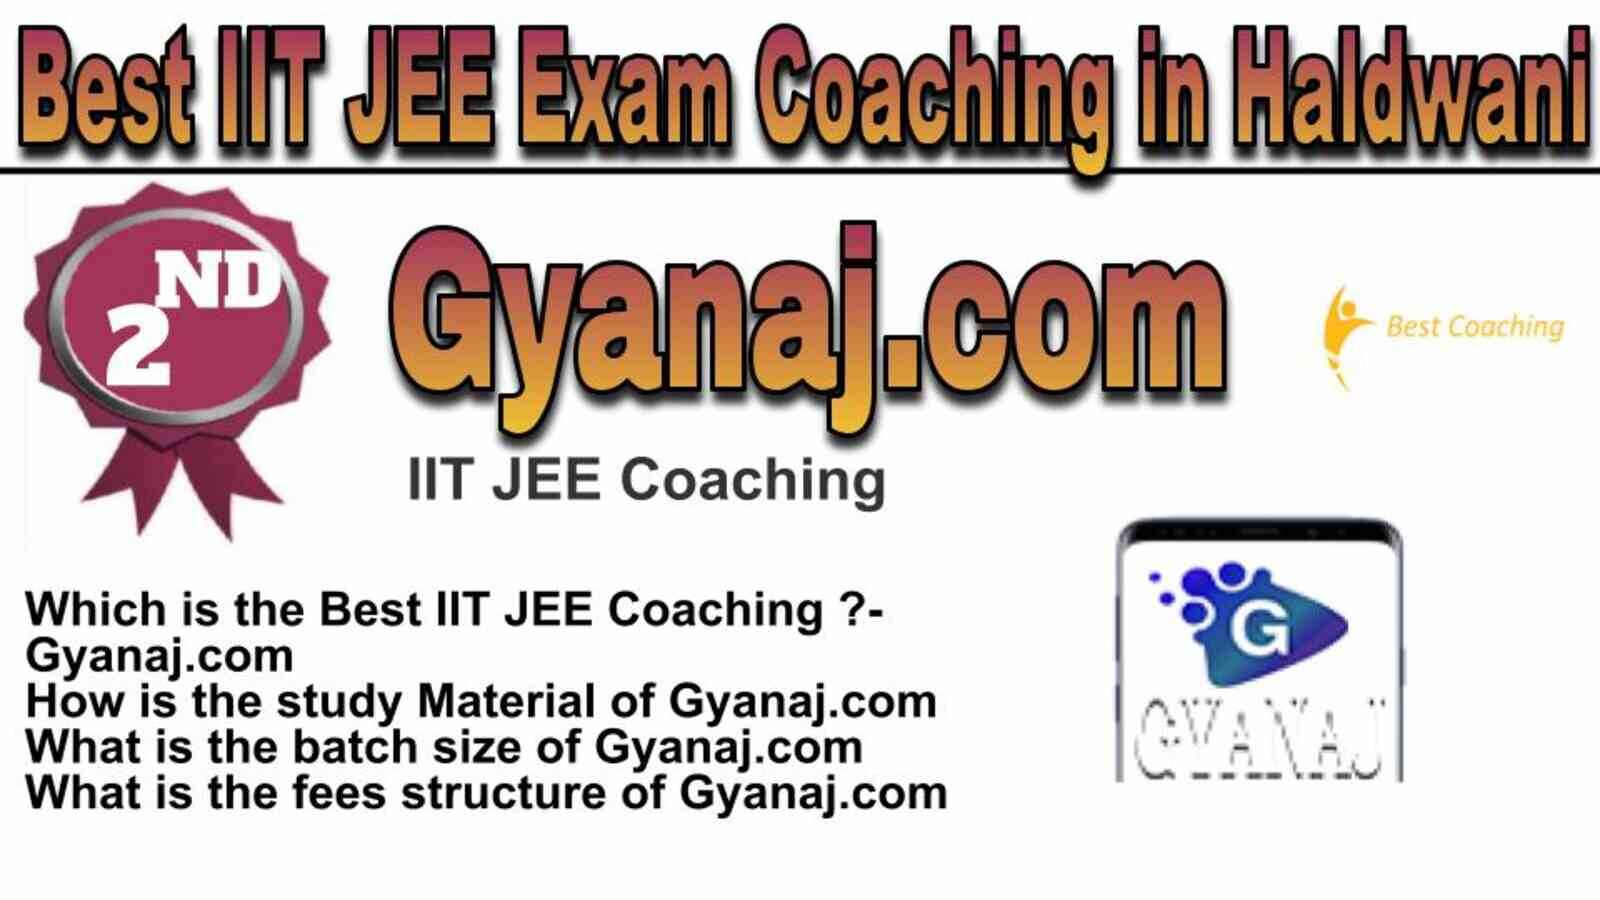 Rank 2 Best IIT JEE Coaching in Haldwani